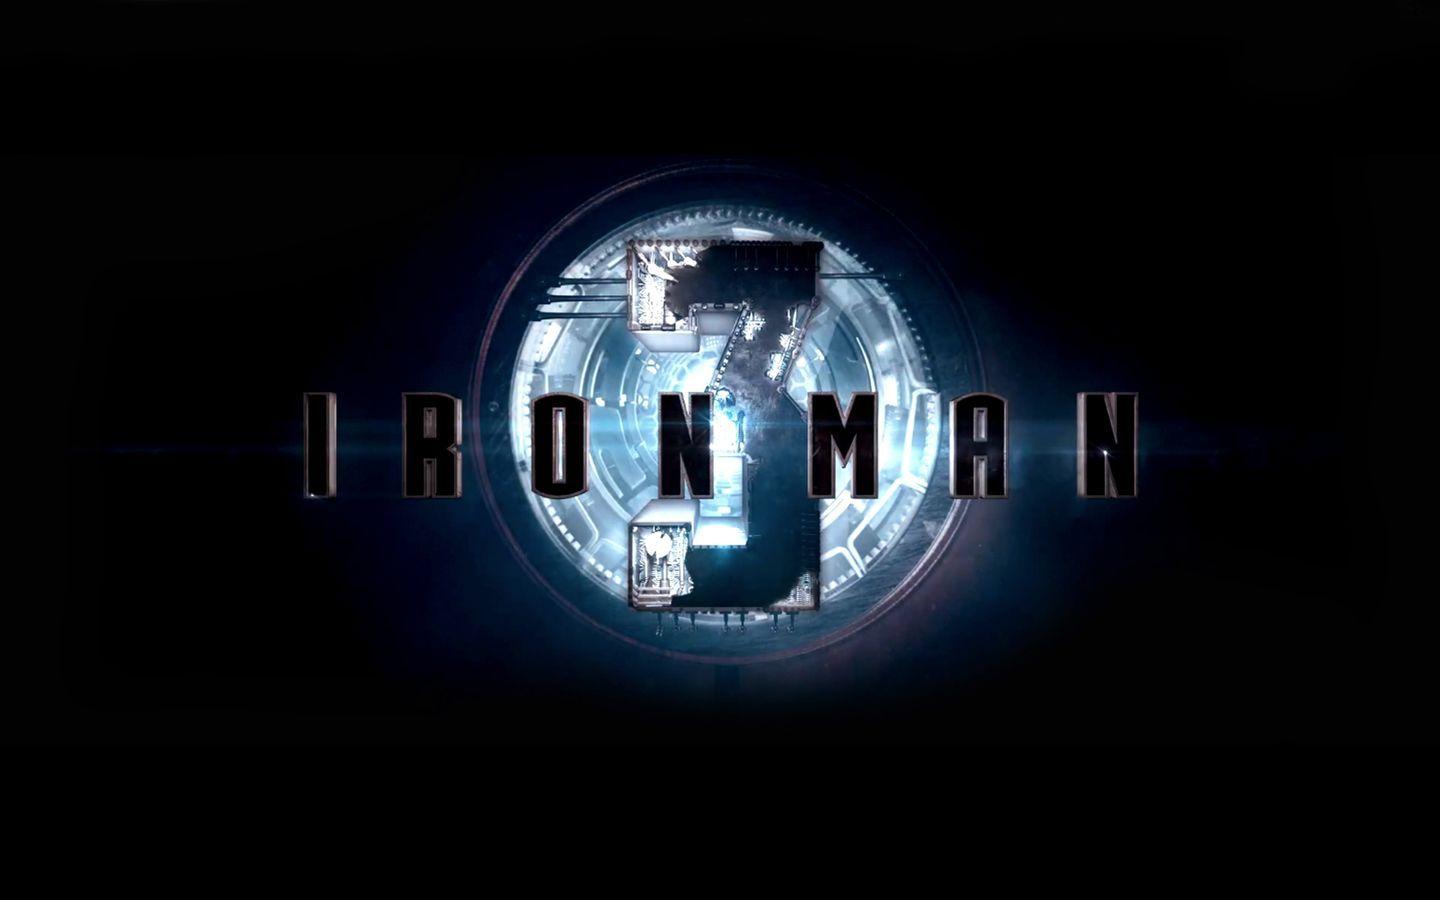 Iron Man Logo. Download this free Iron Man 3 Logo Wallpaper in high